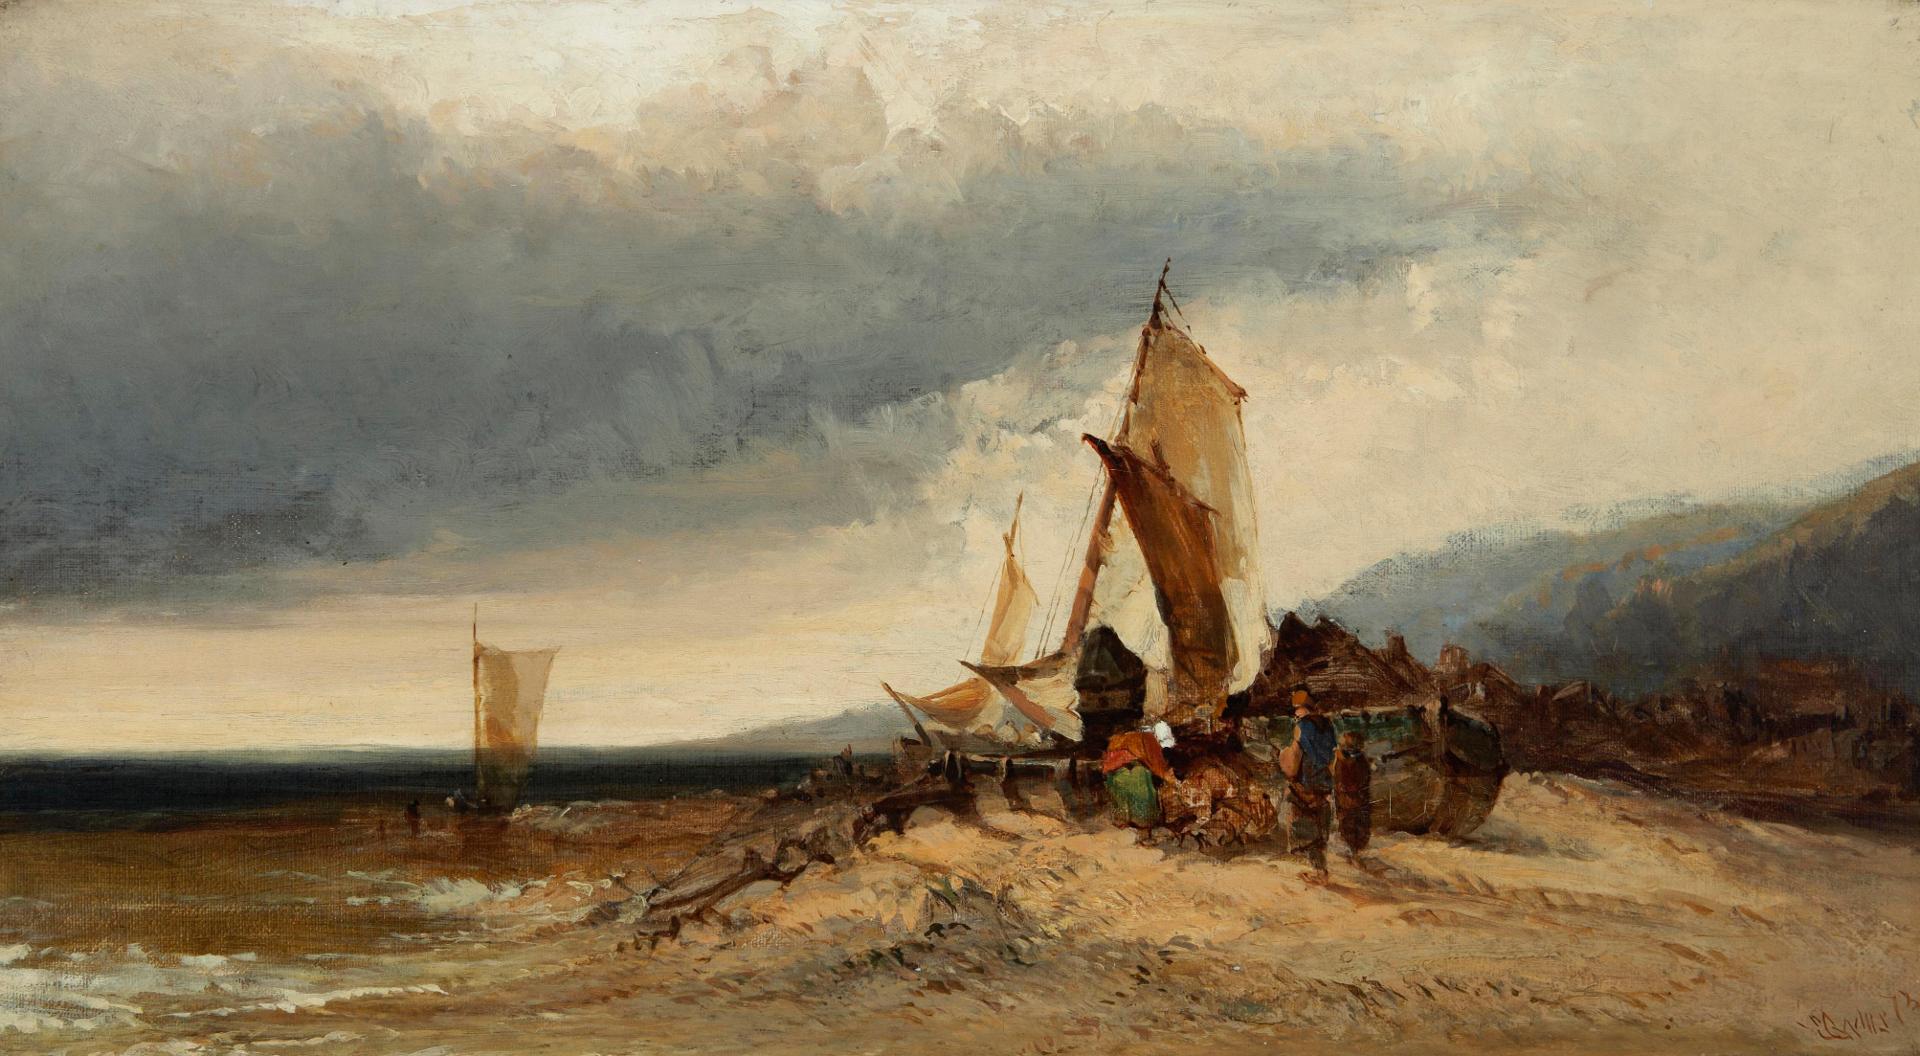 Edward Charles Williams (1807-1881) - On the coast at Shoreham